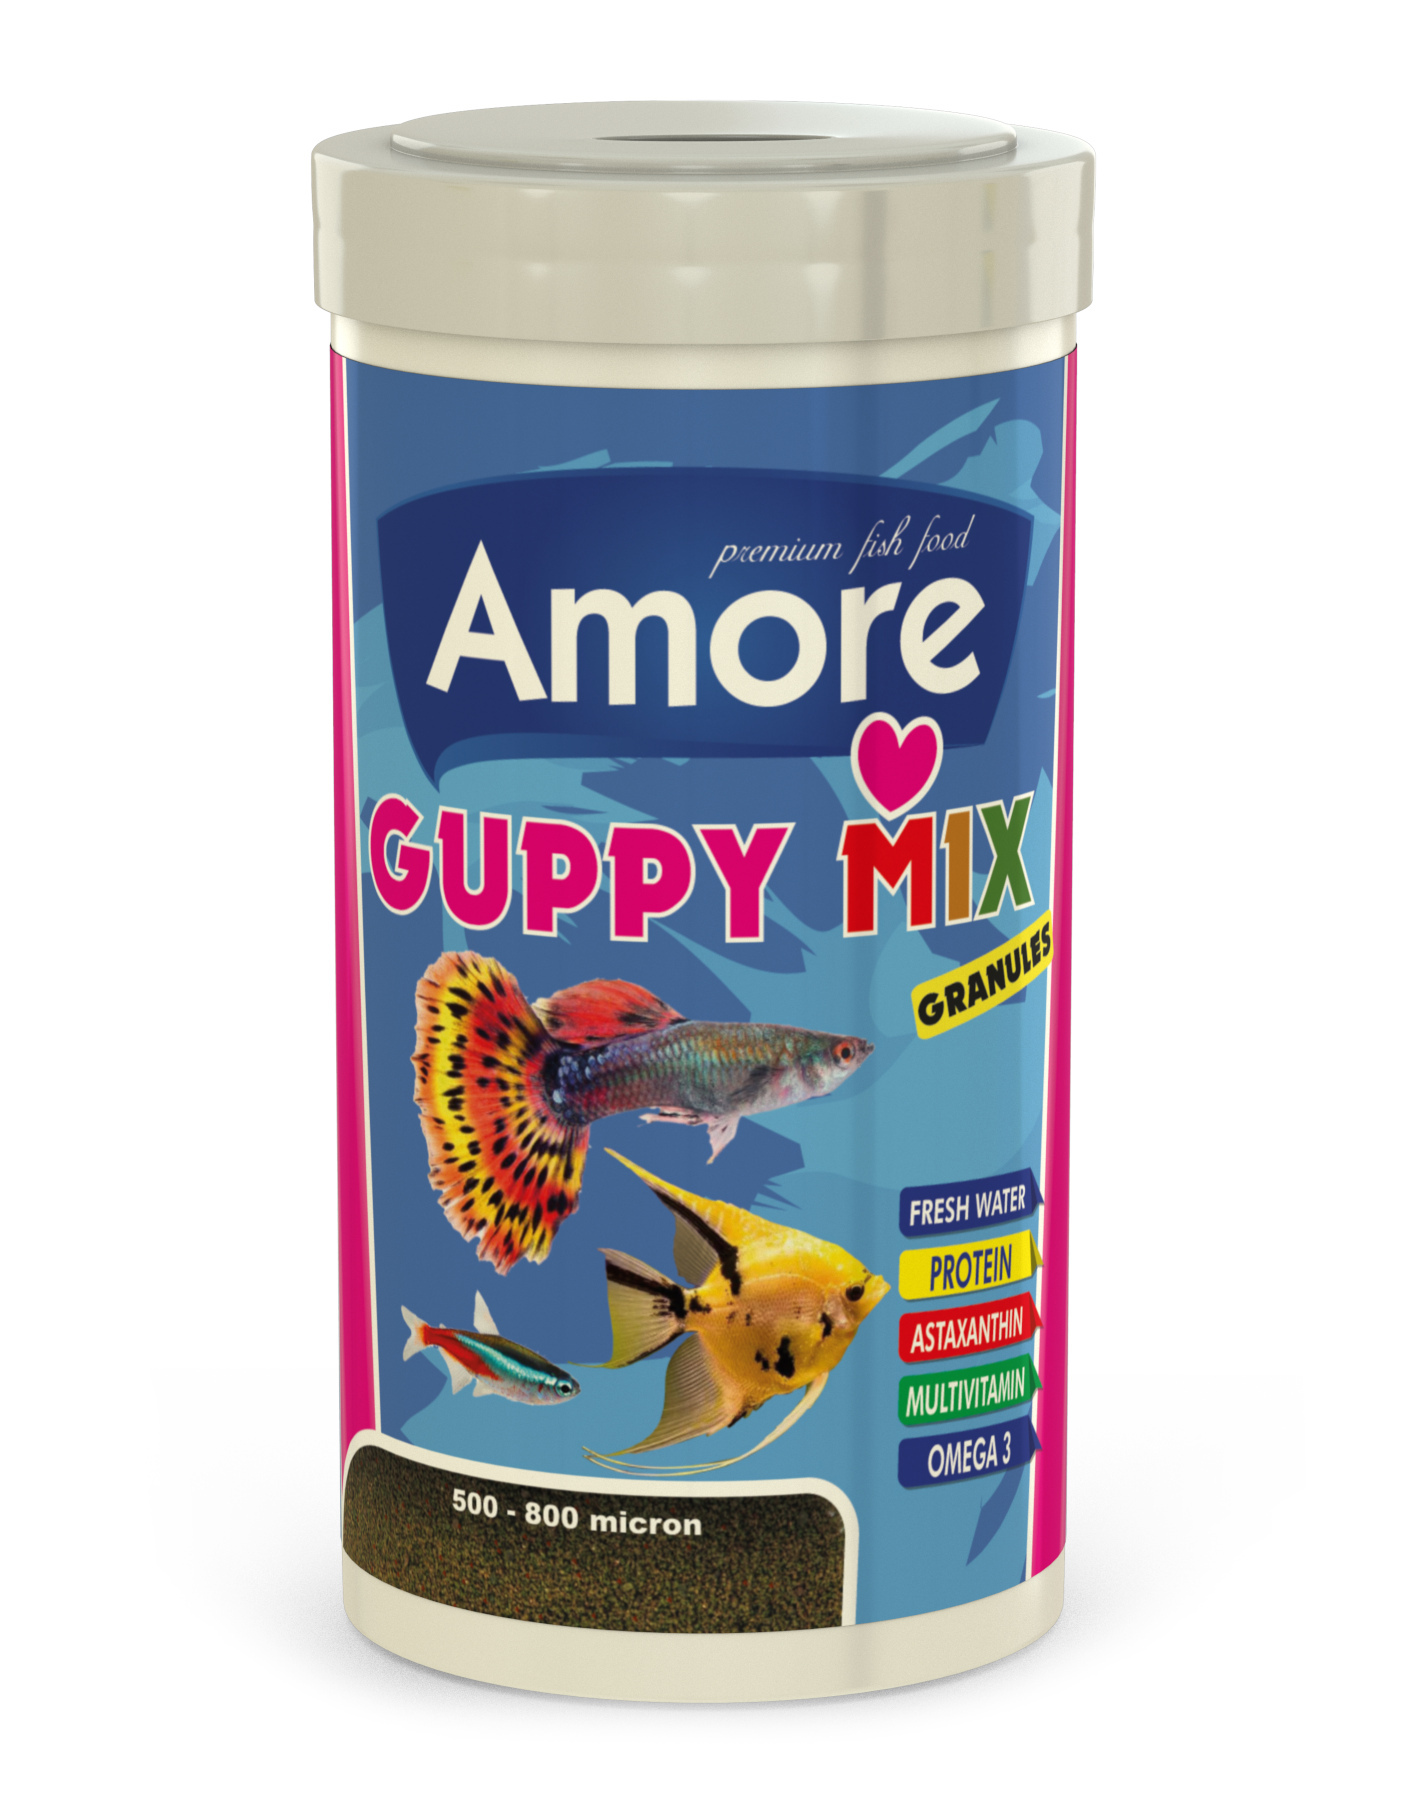 Amore Guppy Mix Granules 2x250ml Kutu Lepistes Tropikal Balık Yemi ve Vitamini